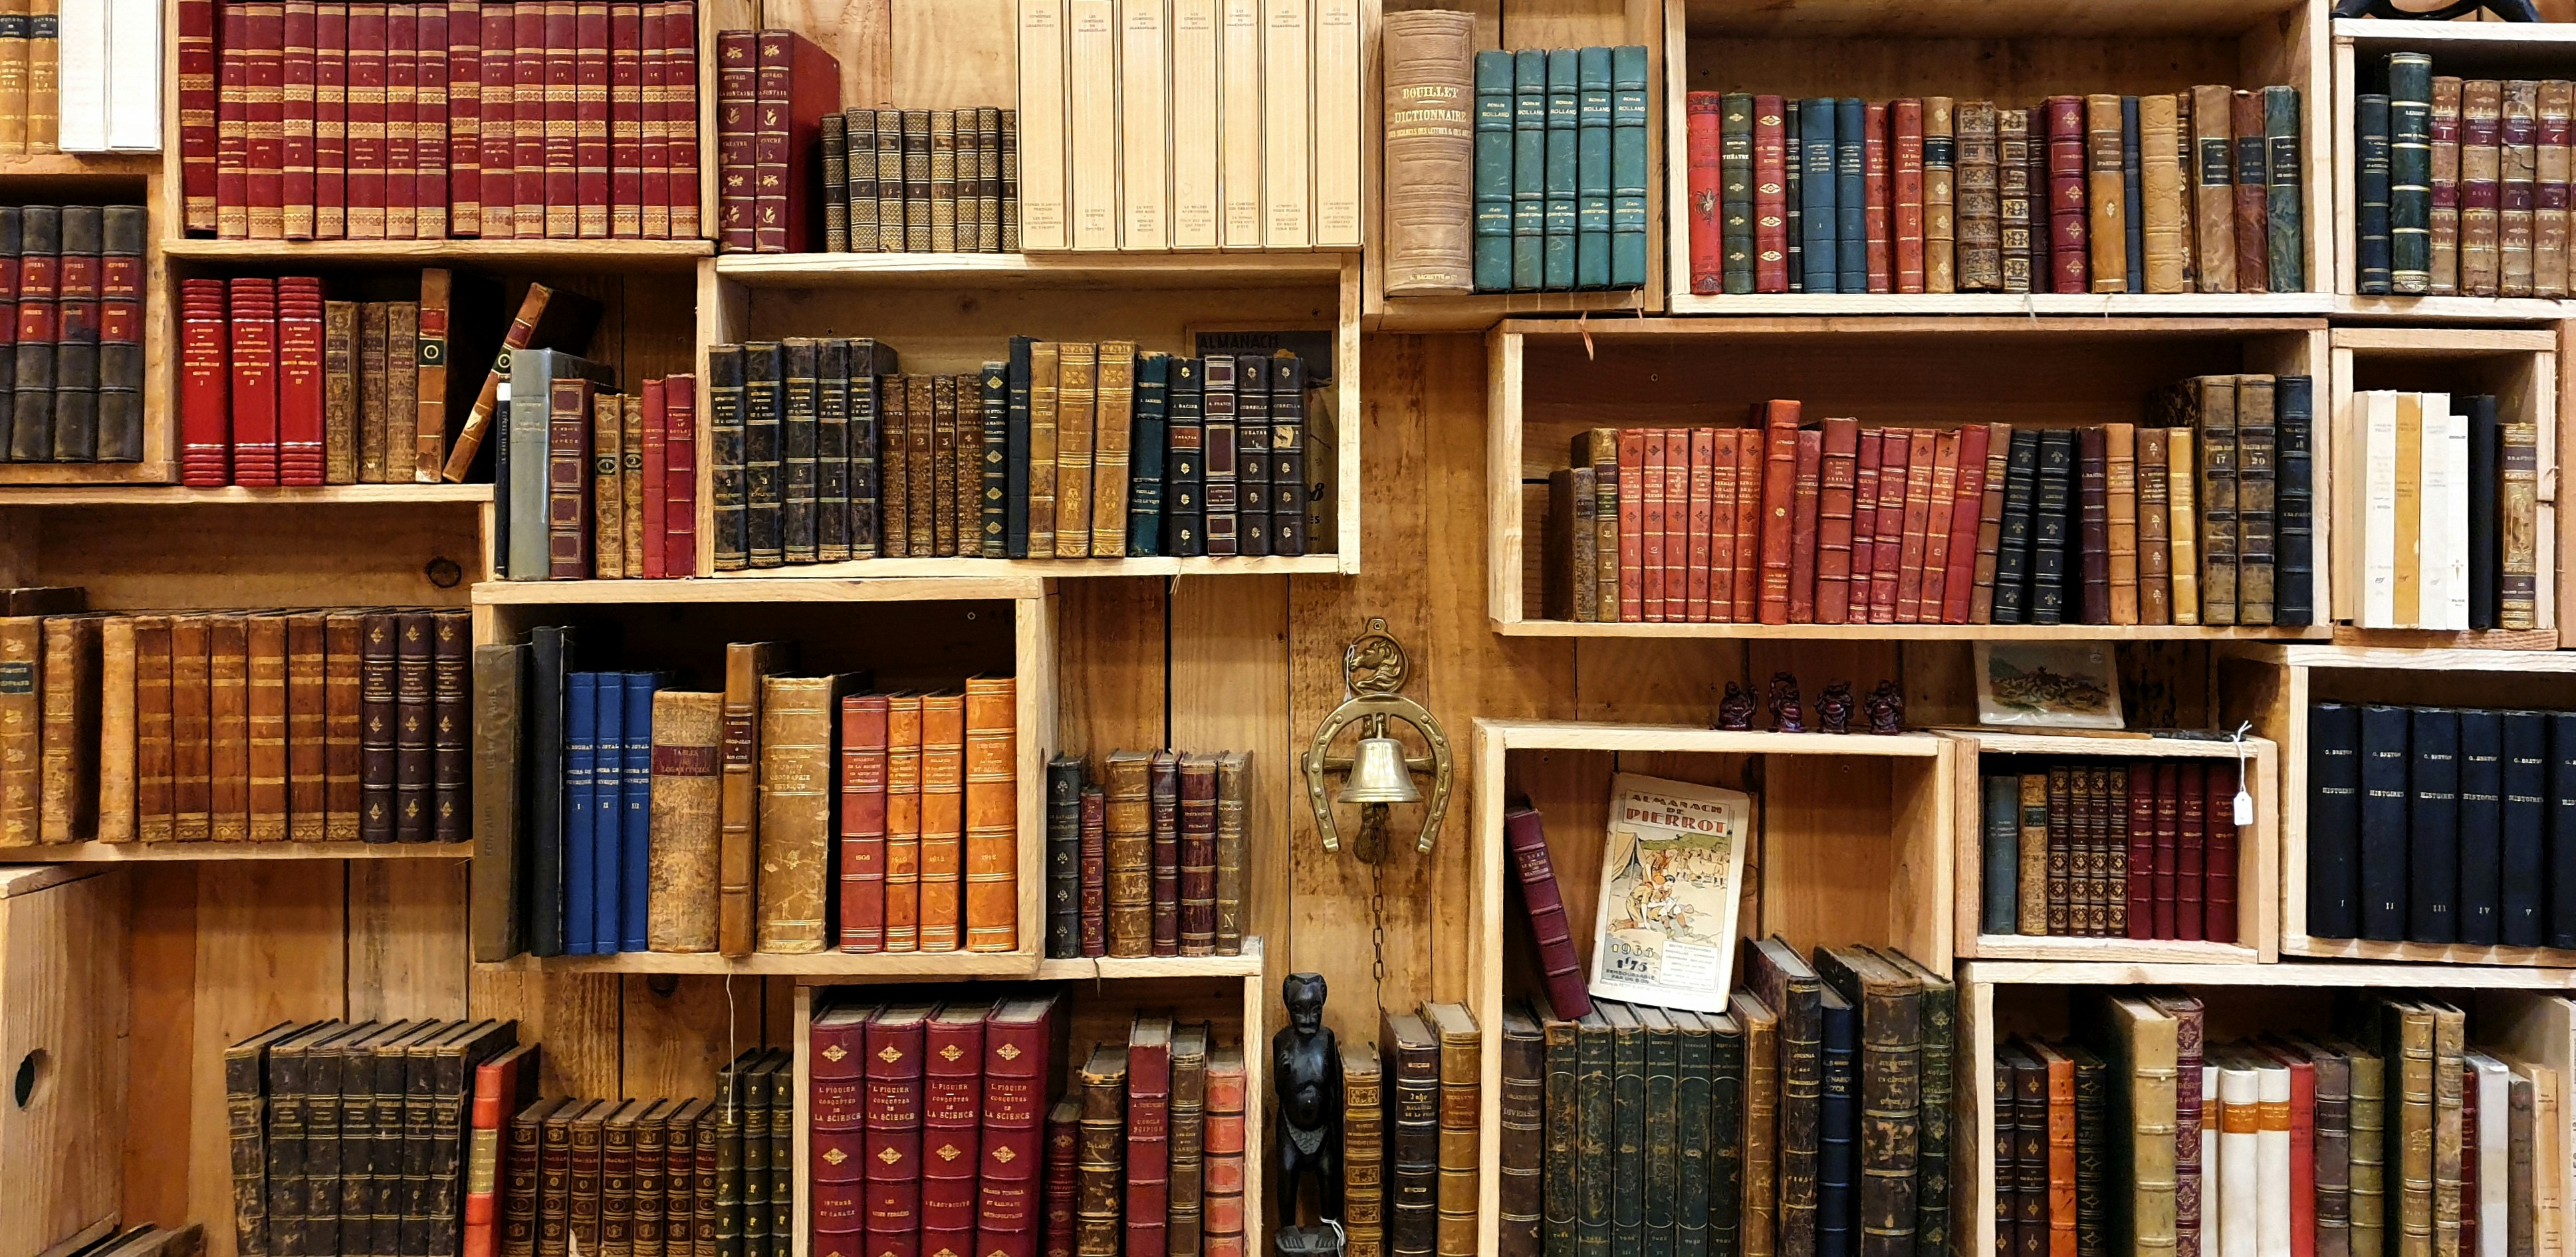 Variety of books on bookshelves